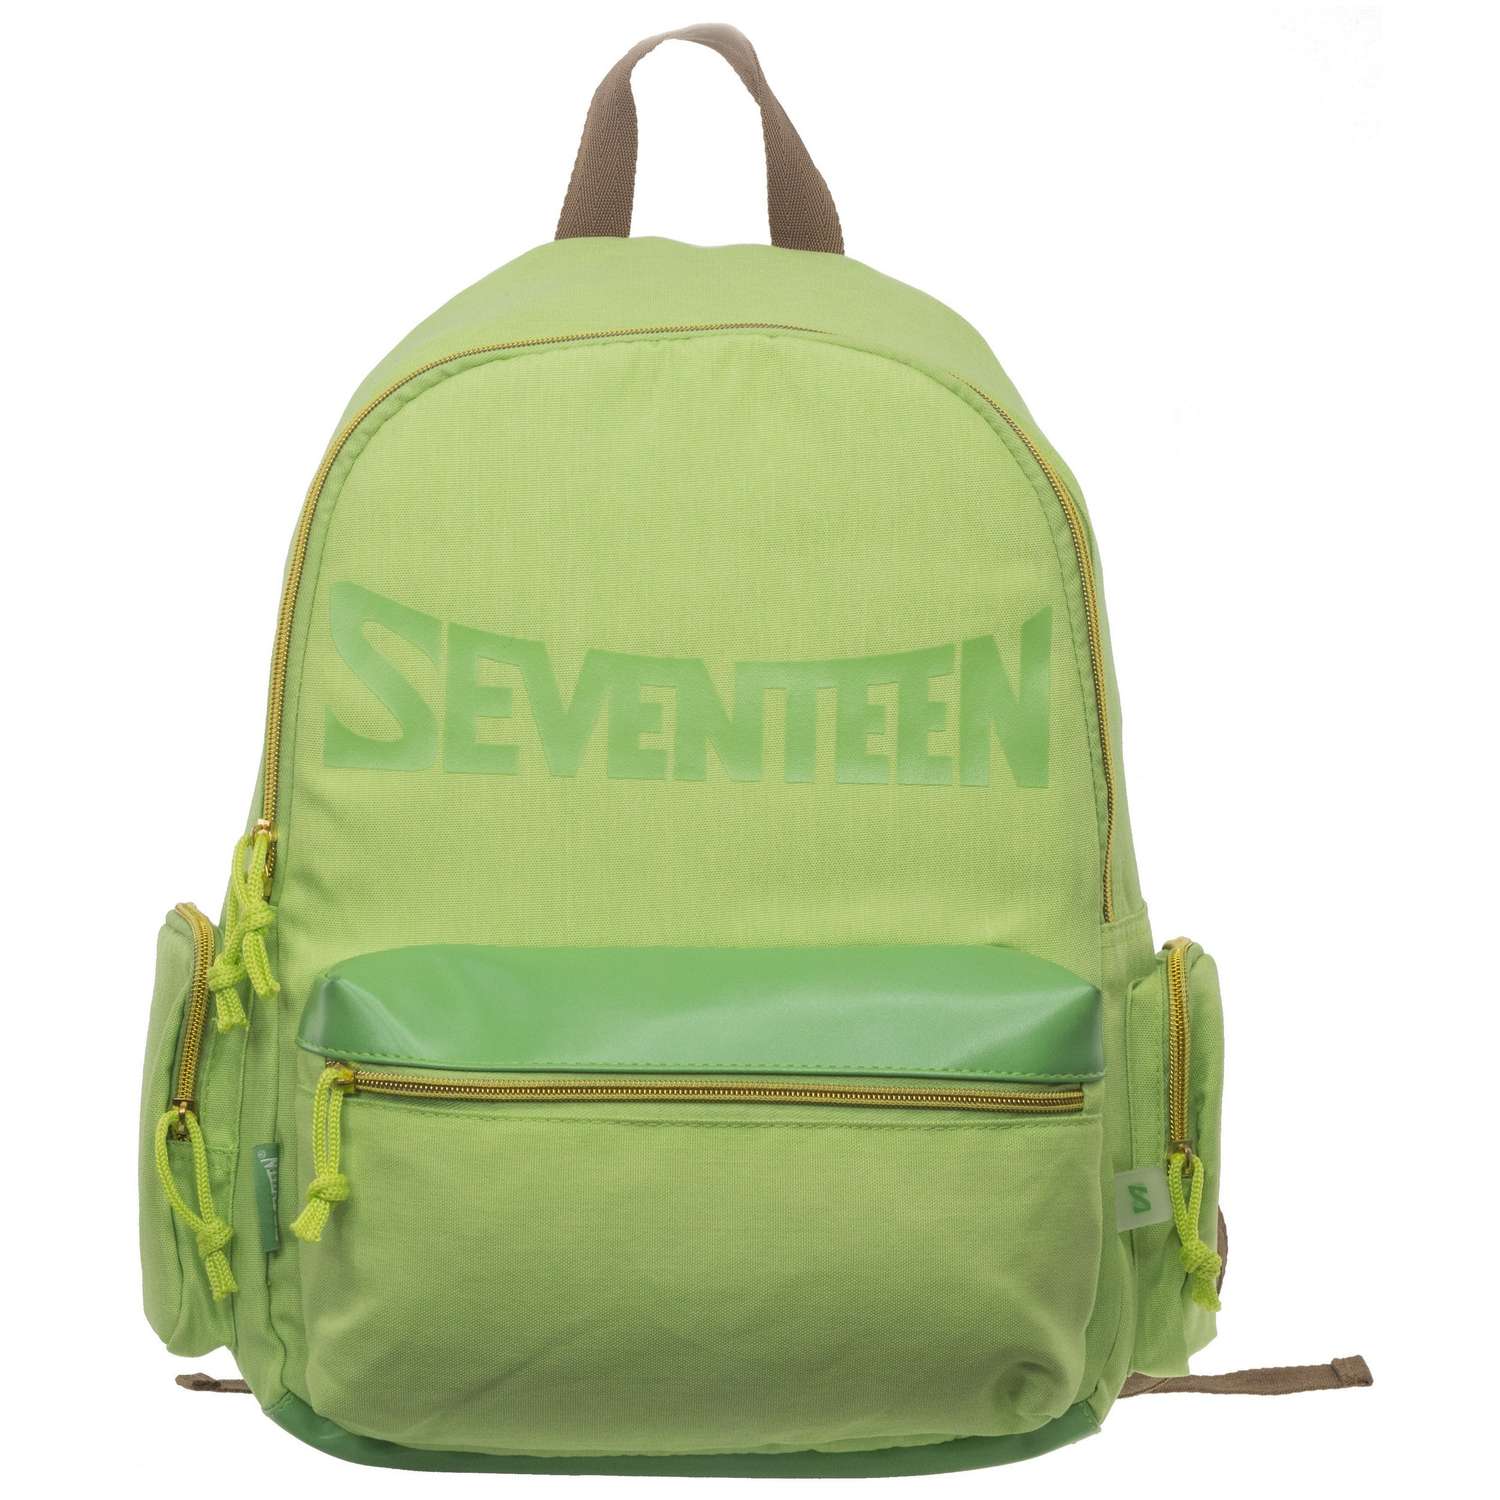 Рюкзак Kinderline Seventeen Зеленый SVEB-UTI-784 - фото 1